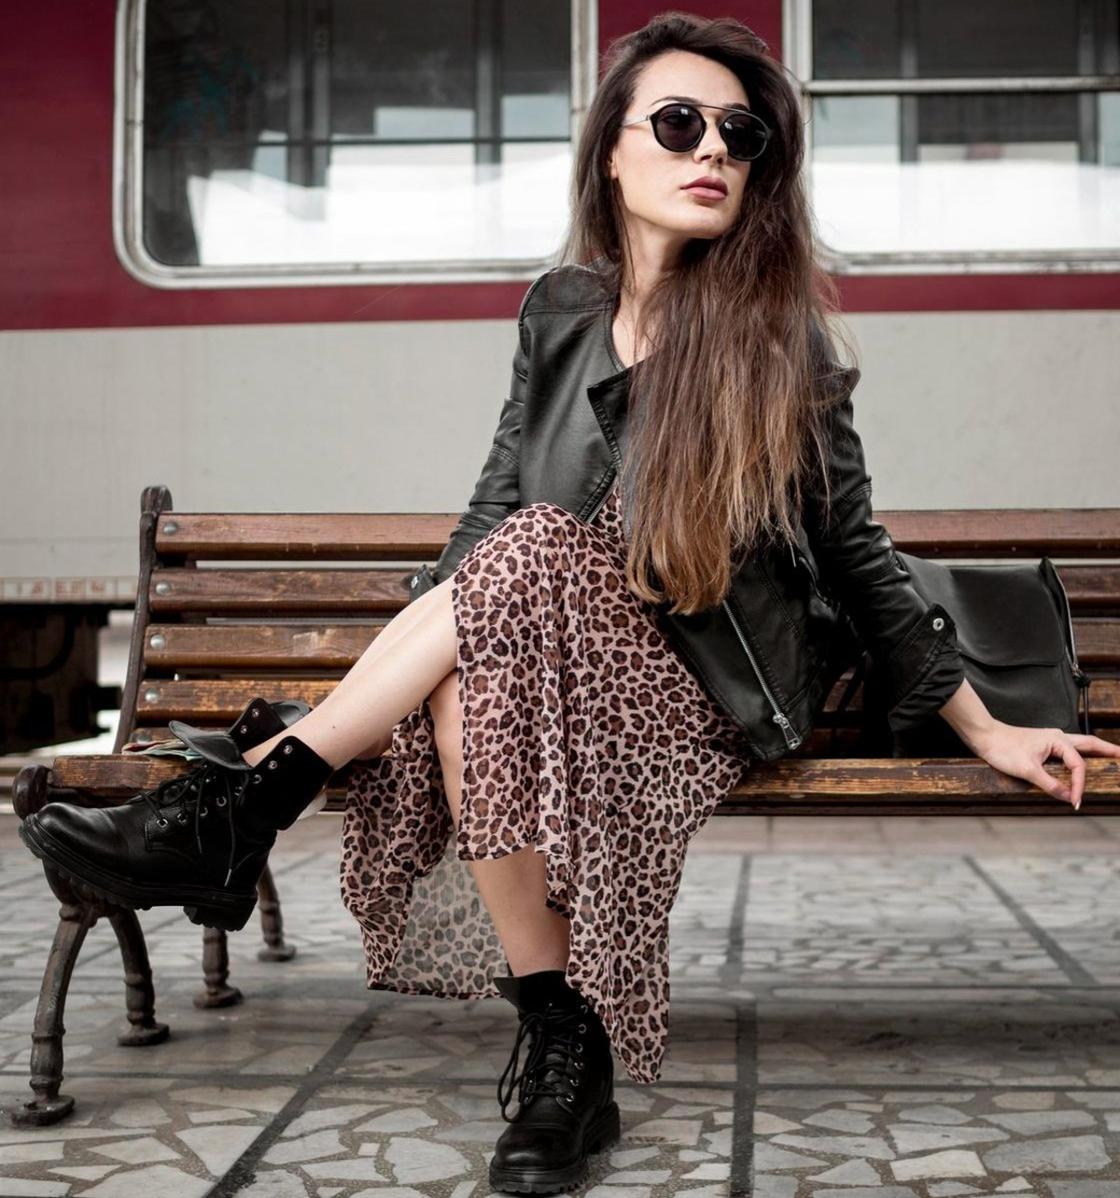 Девушка в грубых ботинках, легком платье и кожаной куртке